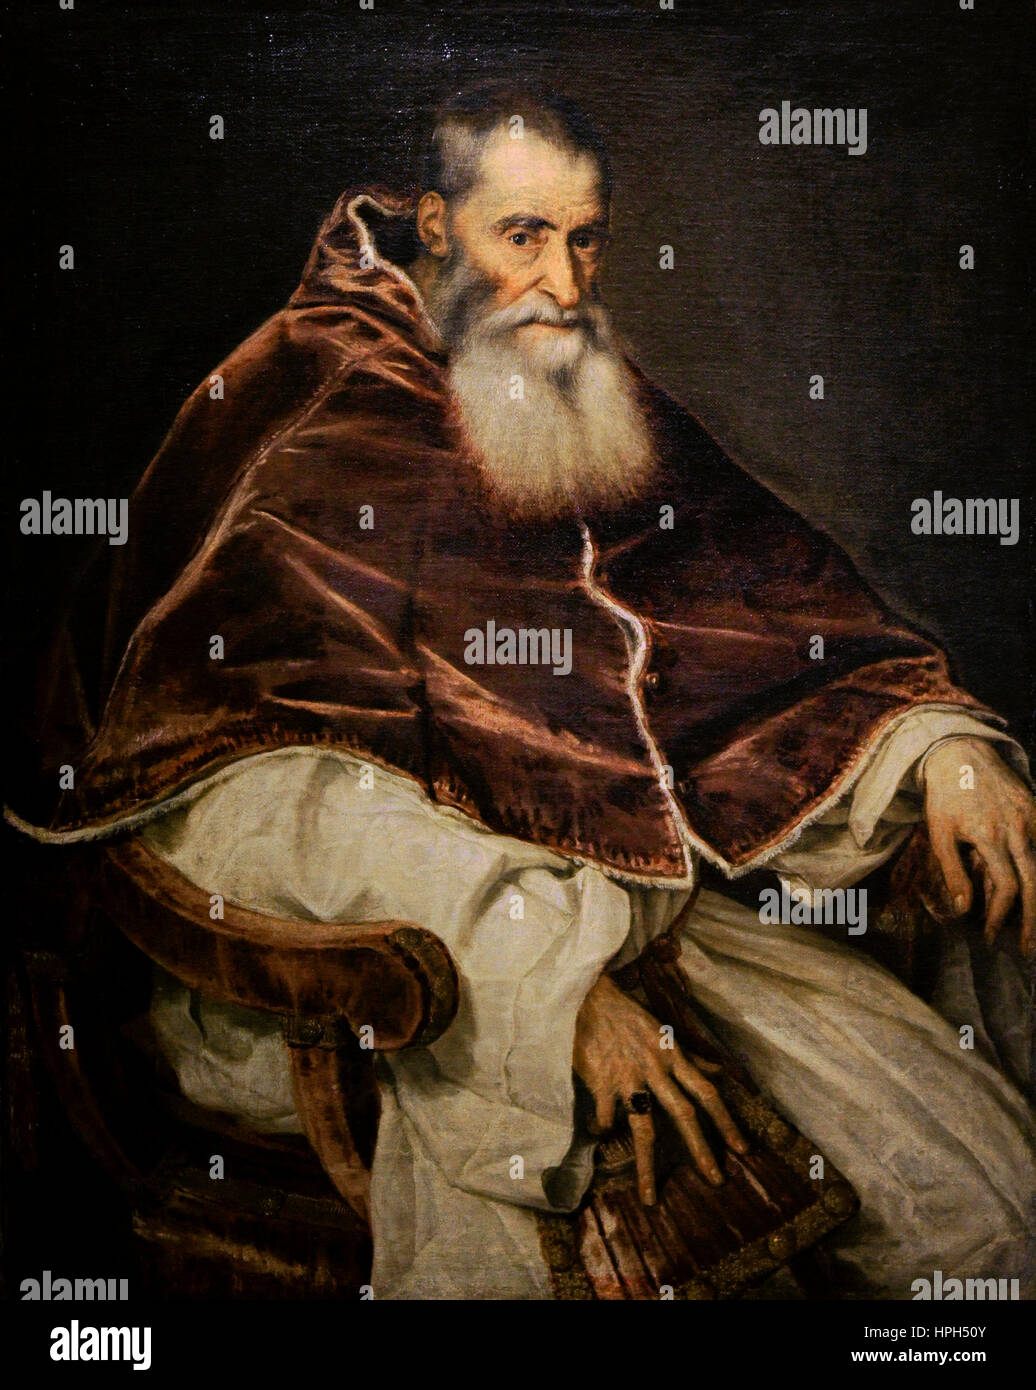 Tizian (1489/1490-1576). Italienischer Maler. Papst Paul III barhäuptig, ca.1543. Farnese-Sammlung. Nationales Museum von Capodimonte. Neapel. Italien. Stockfoto